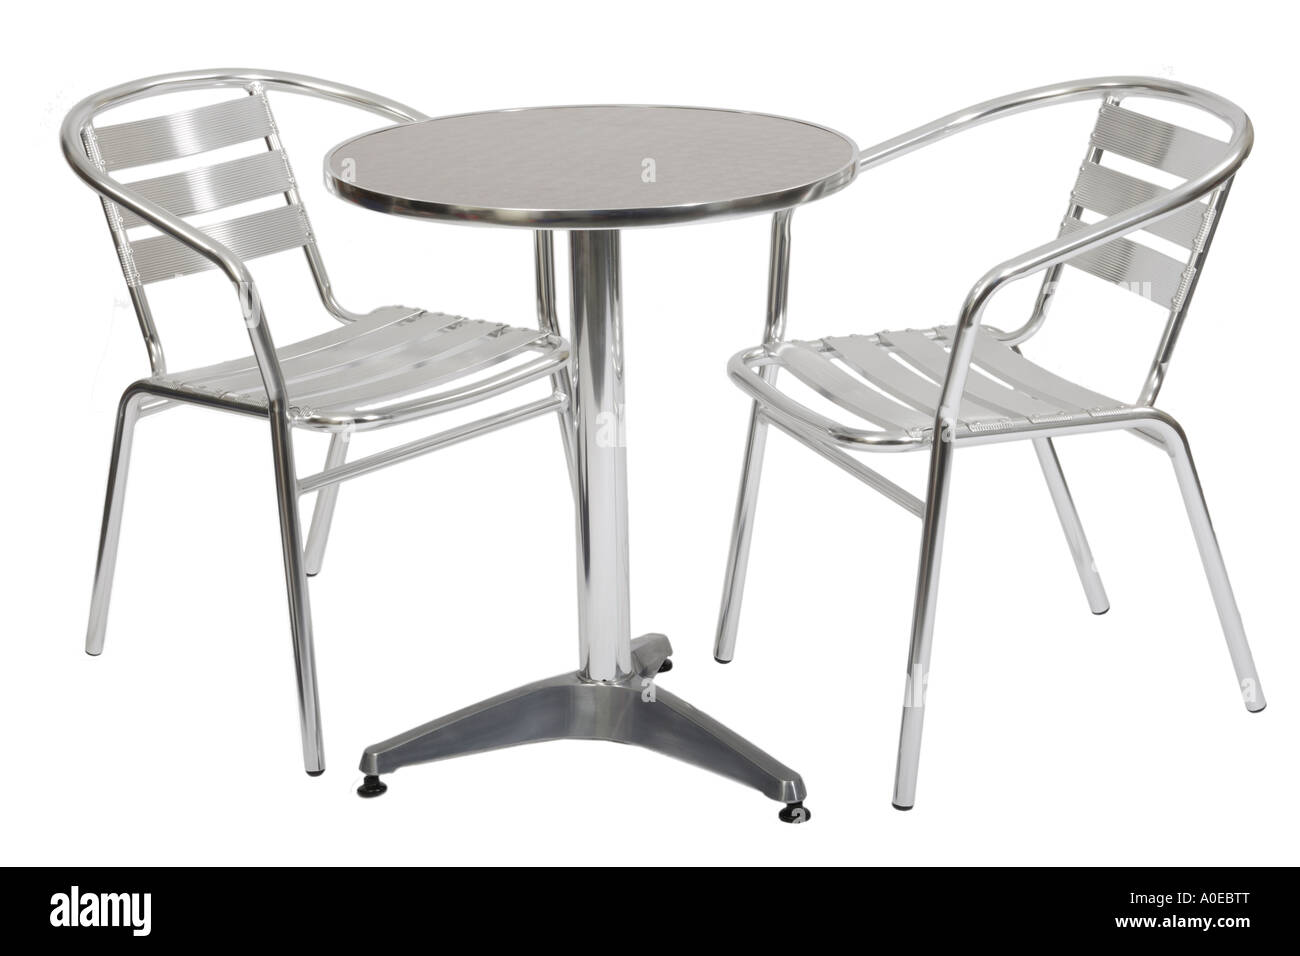 Piscine metal cafe table et deux chaises Banque D'Images